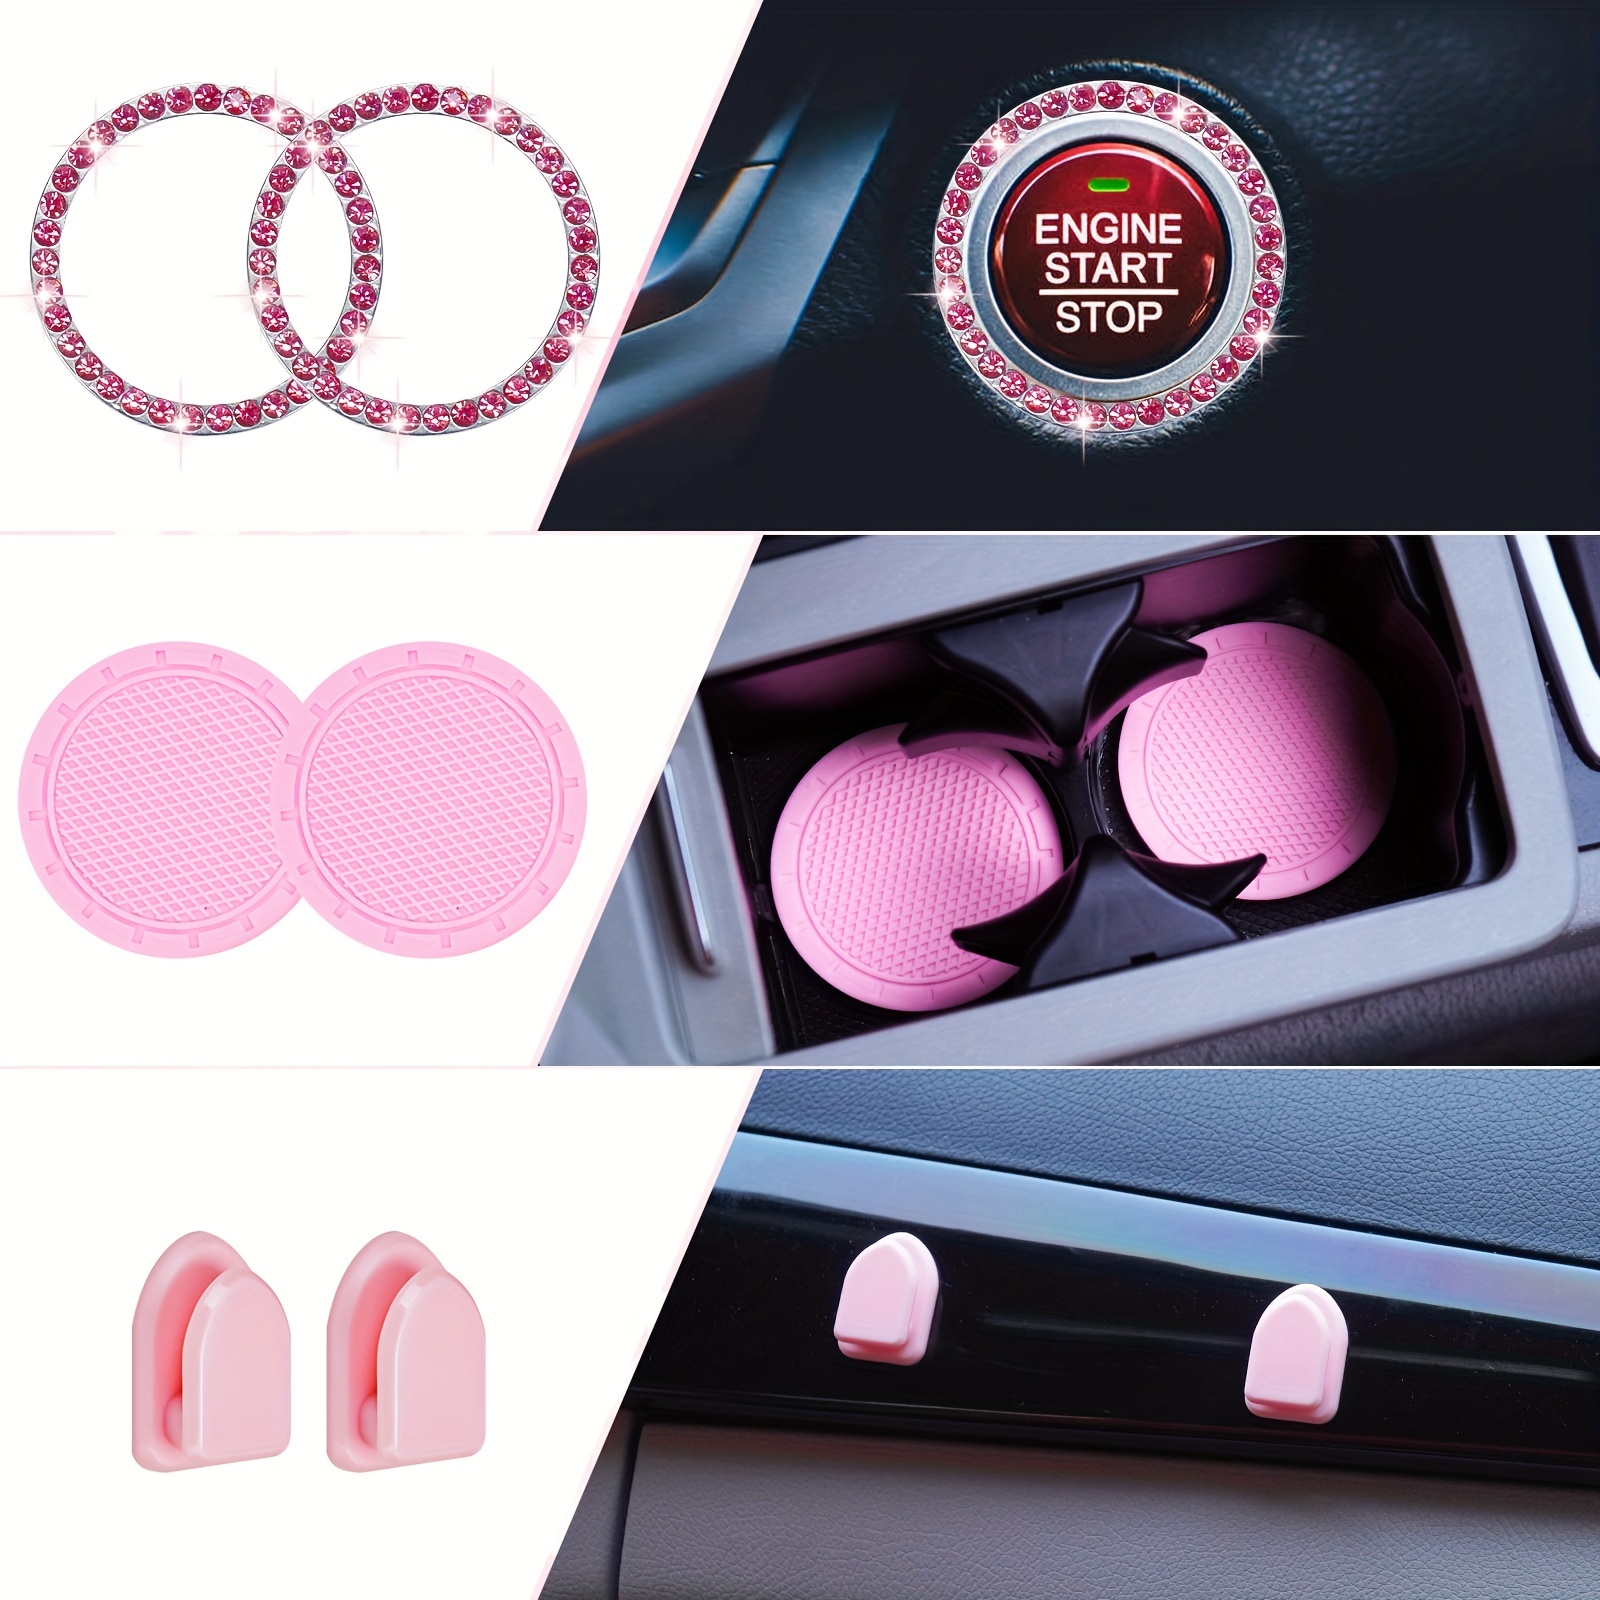 10 Unidades Funda Cuero Pu Color Rosa Volante Mujer, Bonito Juego Accesorios  Coche Fundas Cinturón Seguridad, Posavasos Coche, Anillo Botón Inicio  Brillante, Clip Ventilación - Automotriz - Temu